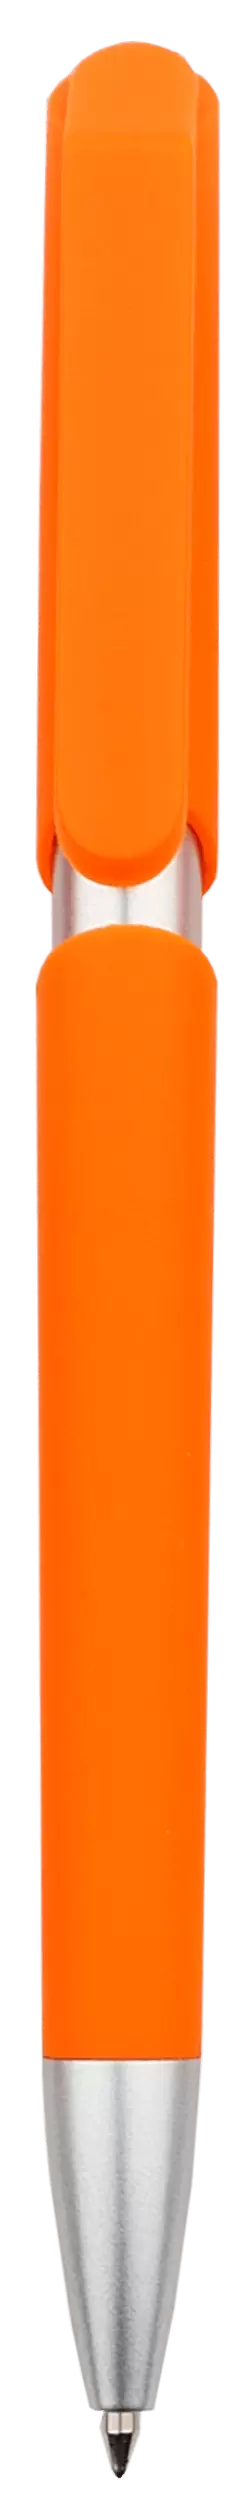 Ручка ZOOM SOFT Оранжевая 2020-05